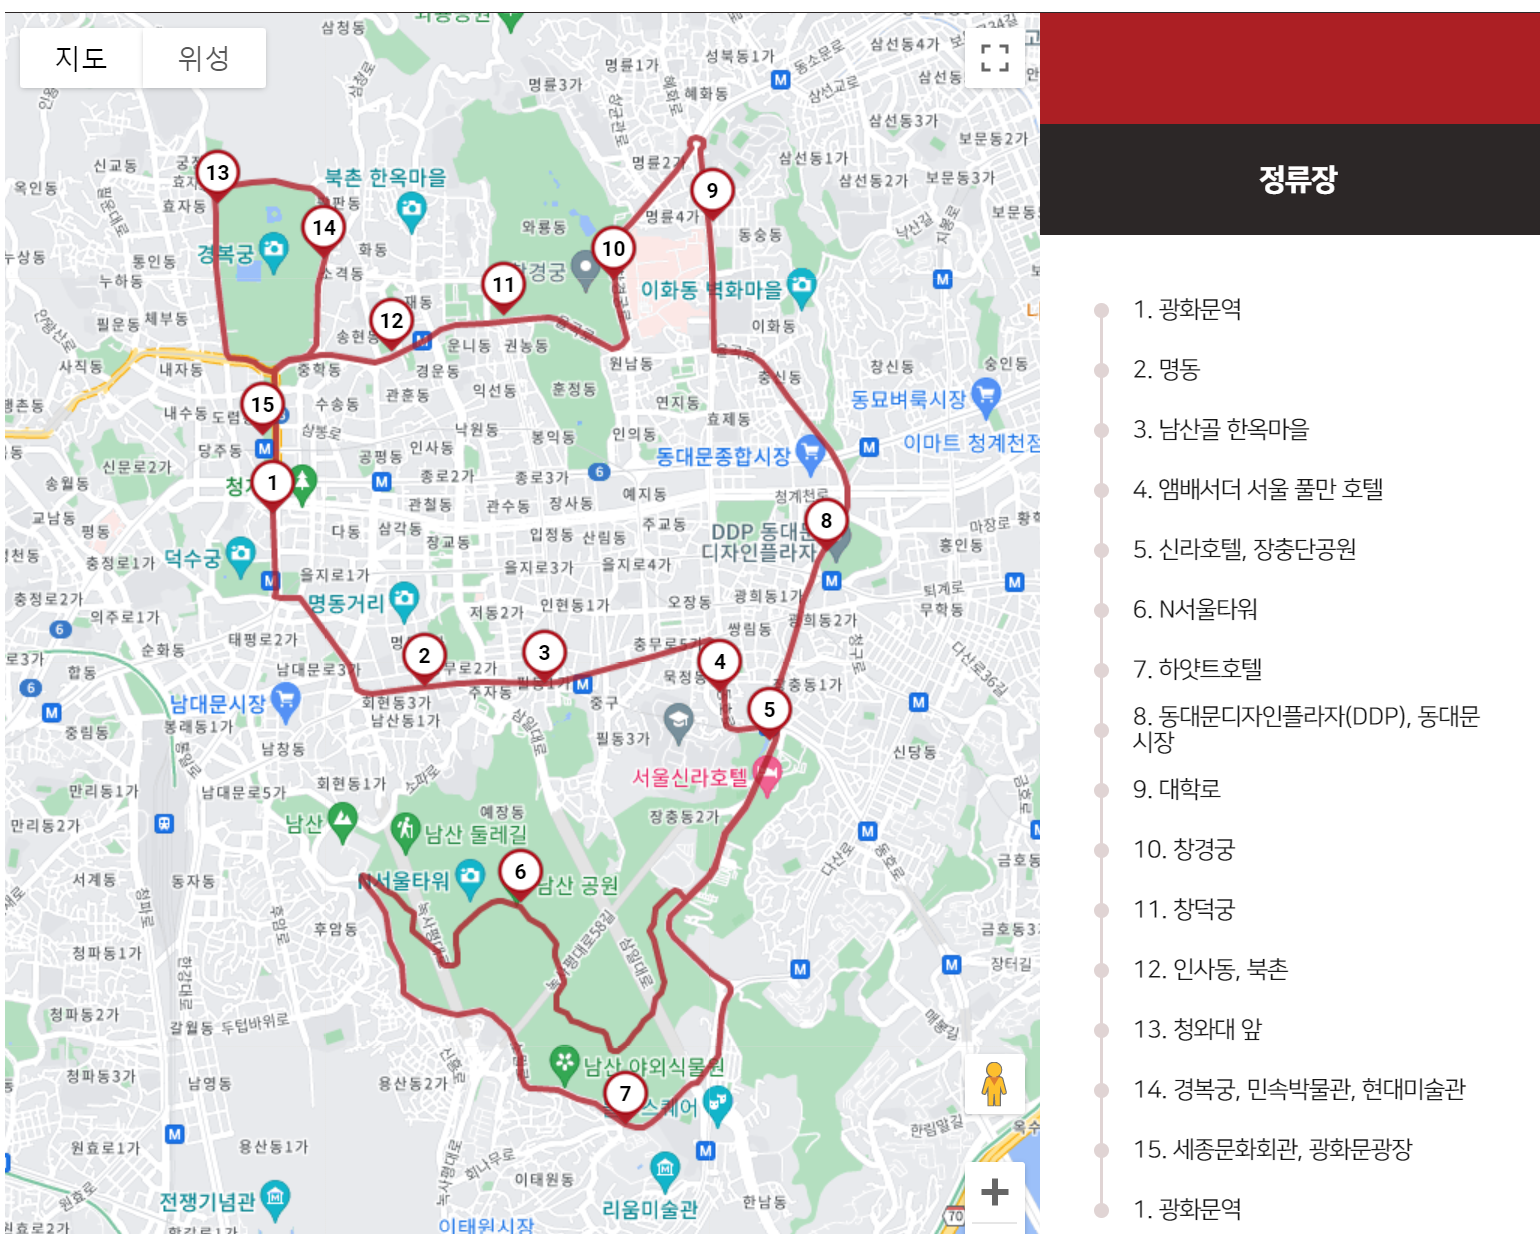 서울 시티 투어 버스 운행 시간표 코스 정보 정류장 위치 표 사는 곳 버스 종류 예약 방법 버스 요금3